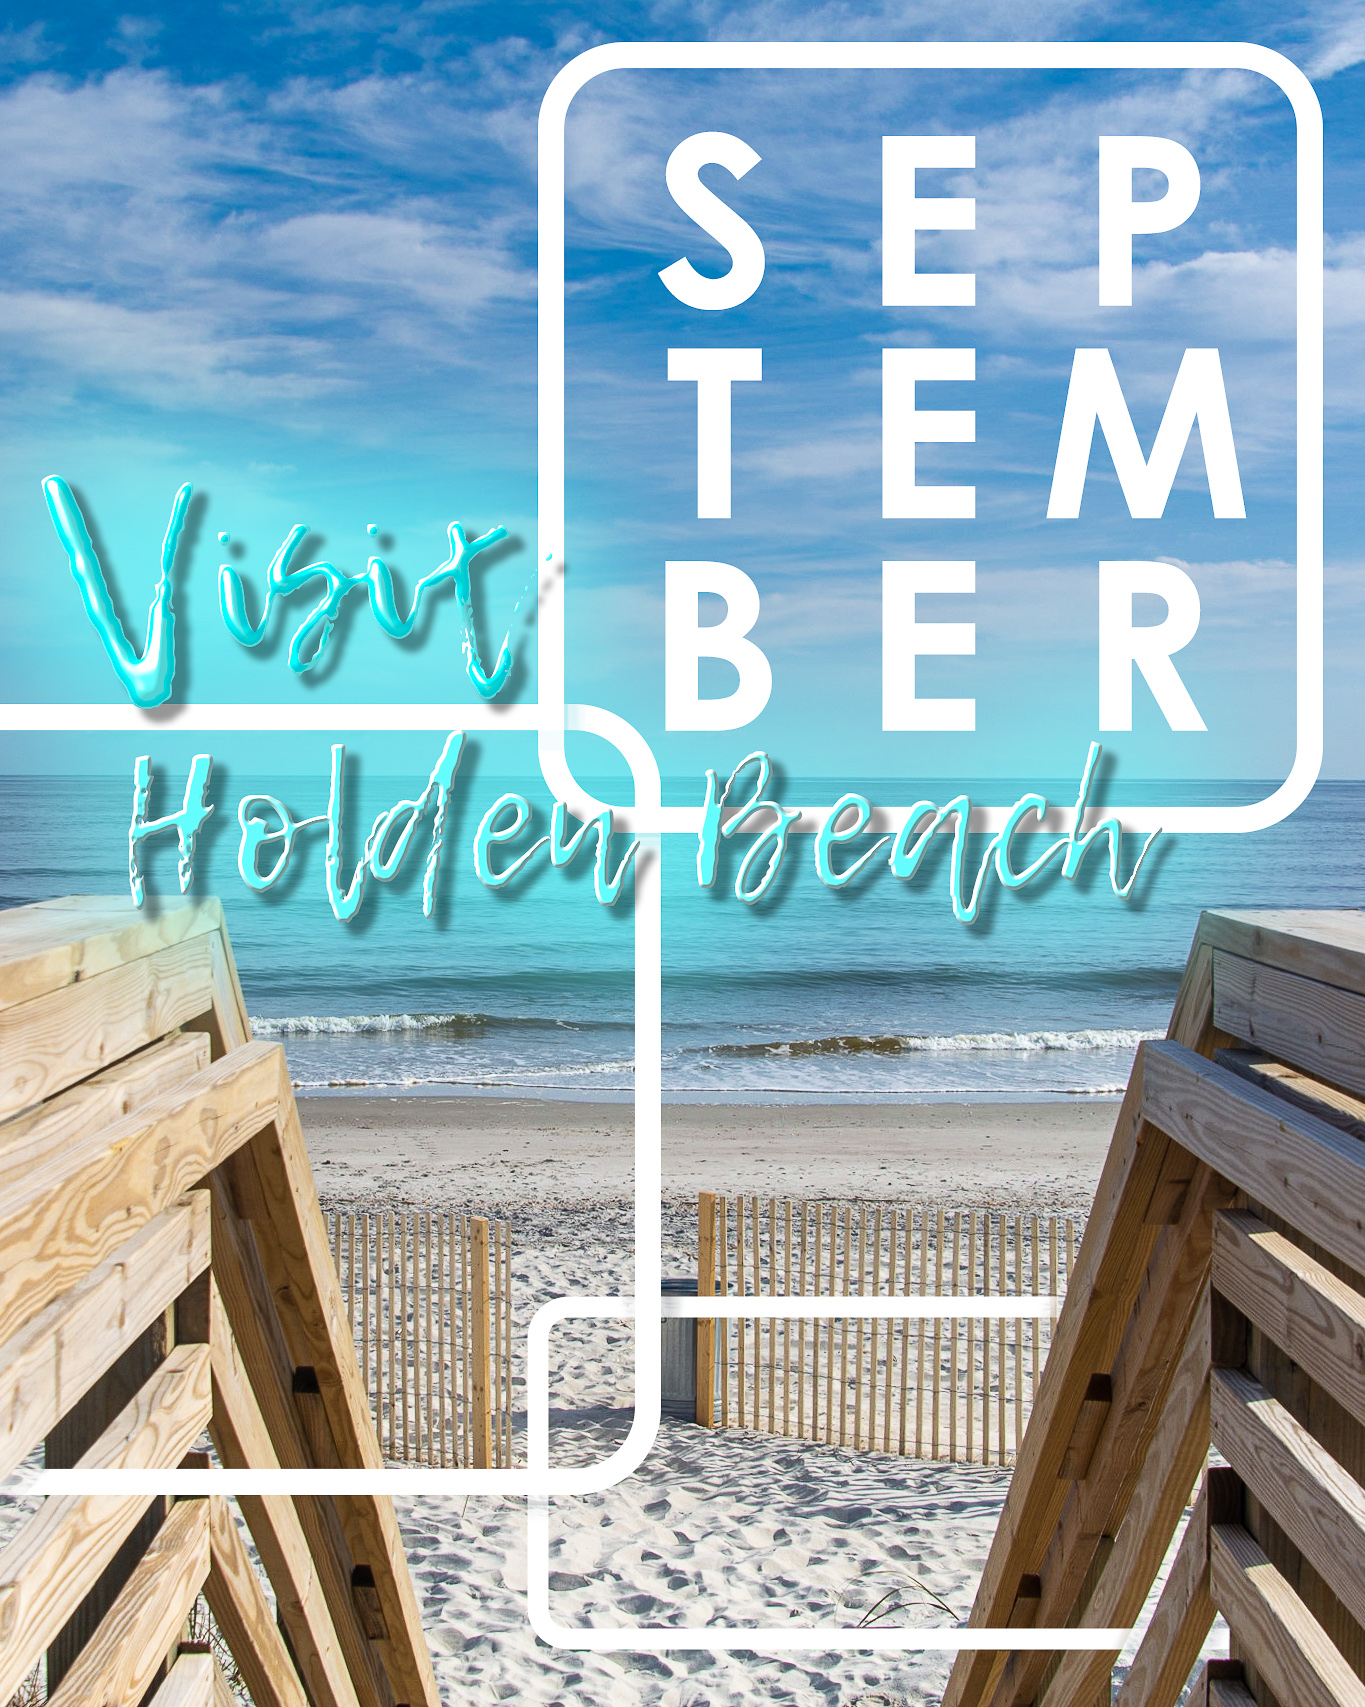 Visit Holden Beach in September